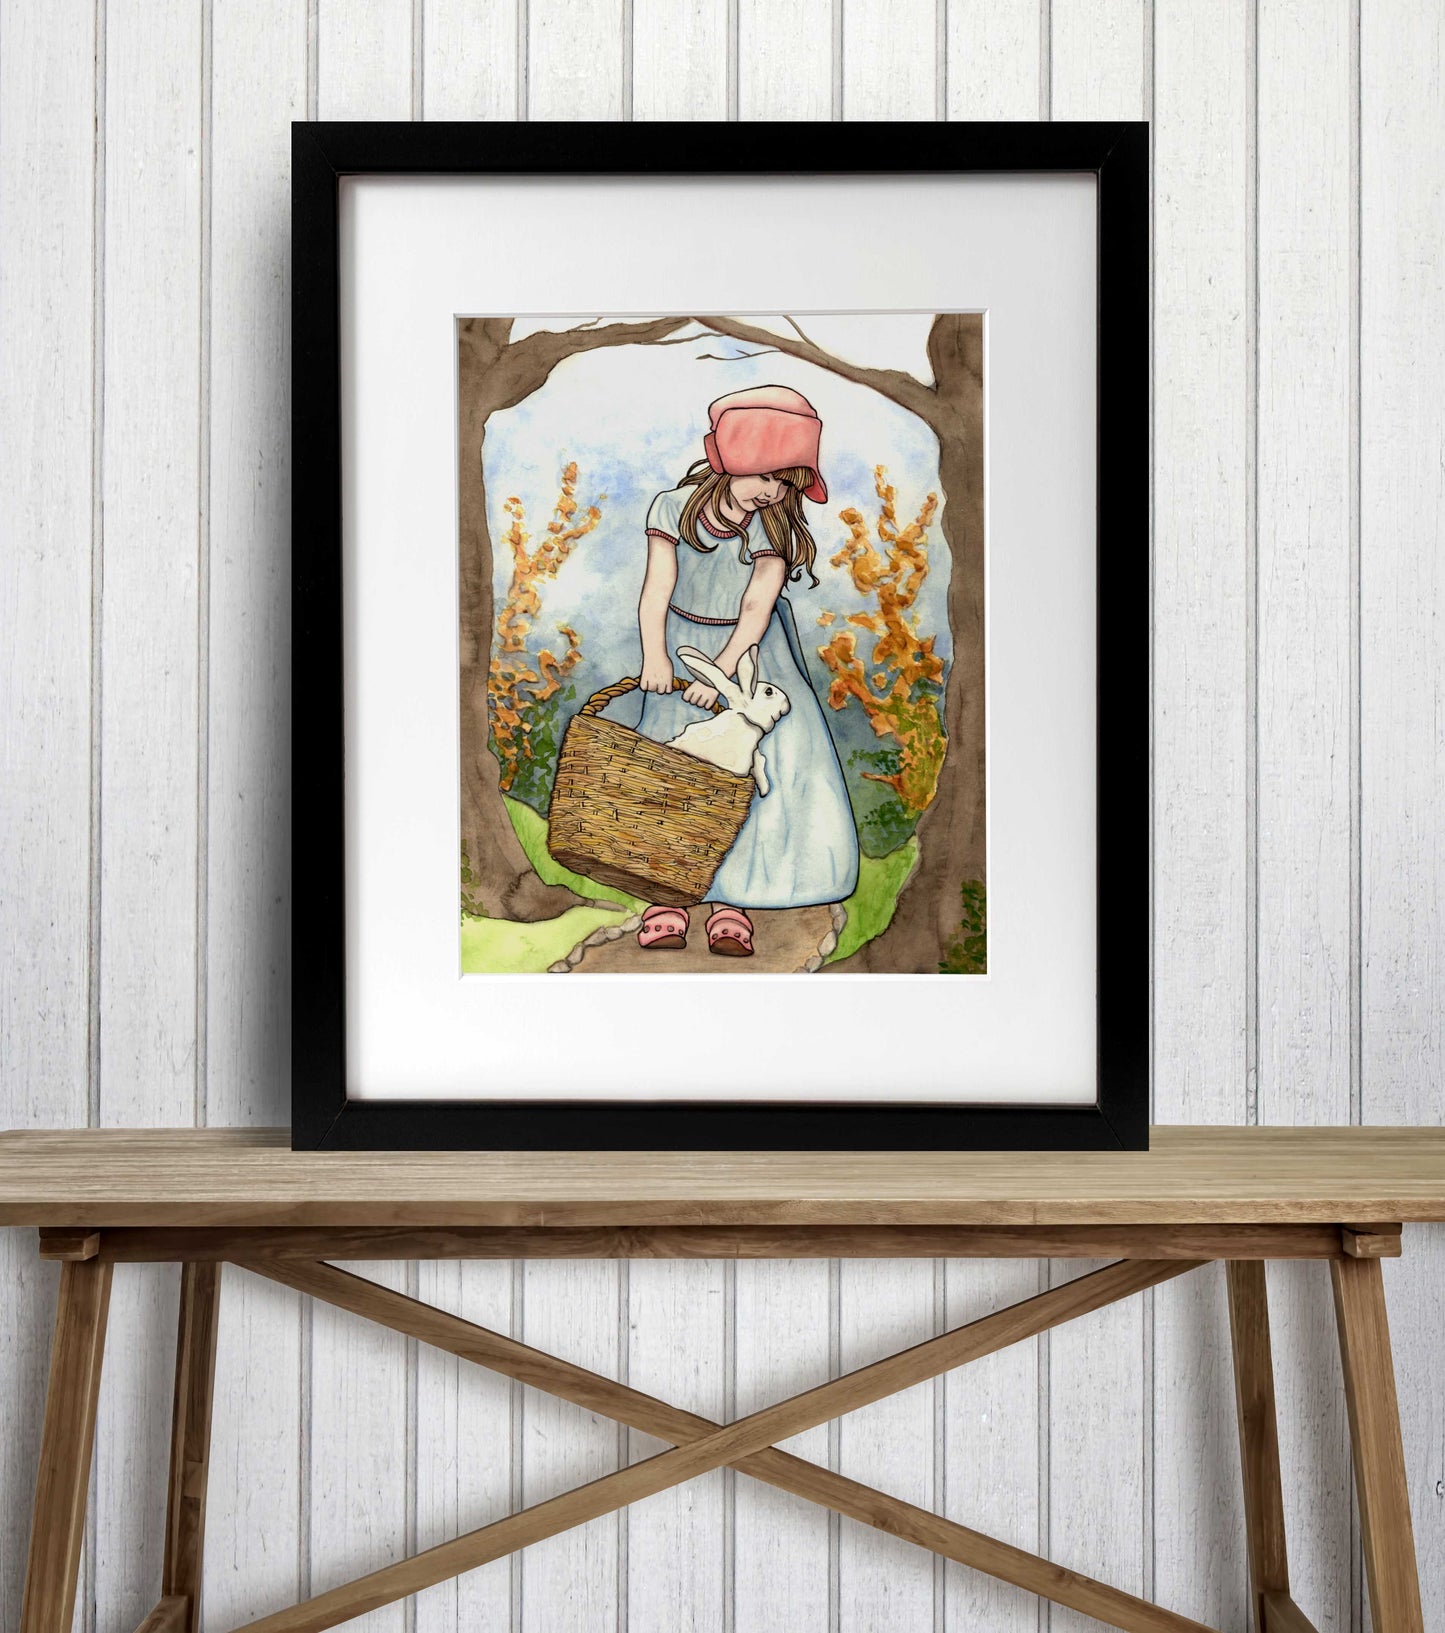 PinkPolish Design Art Prints "Bun in a Basket" Watercolor Painting: Art Print